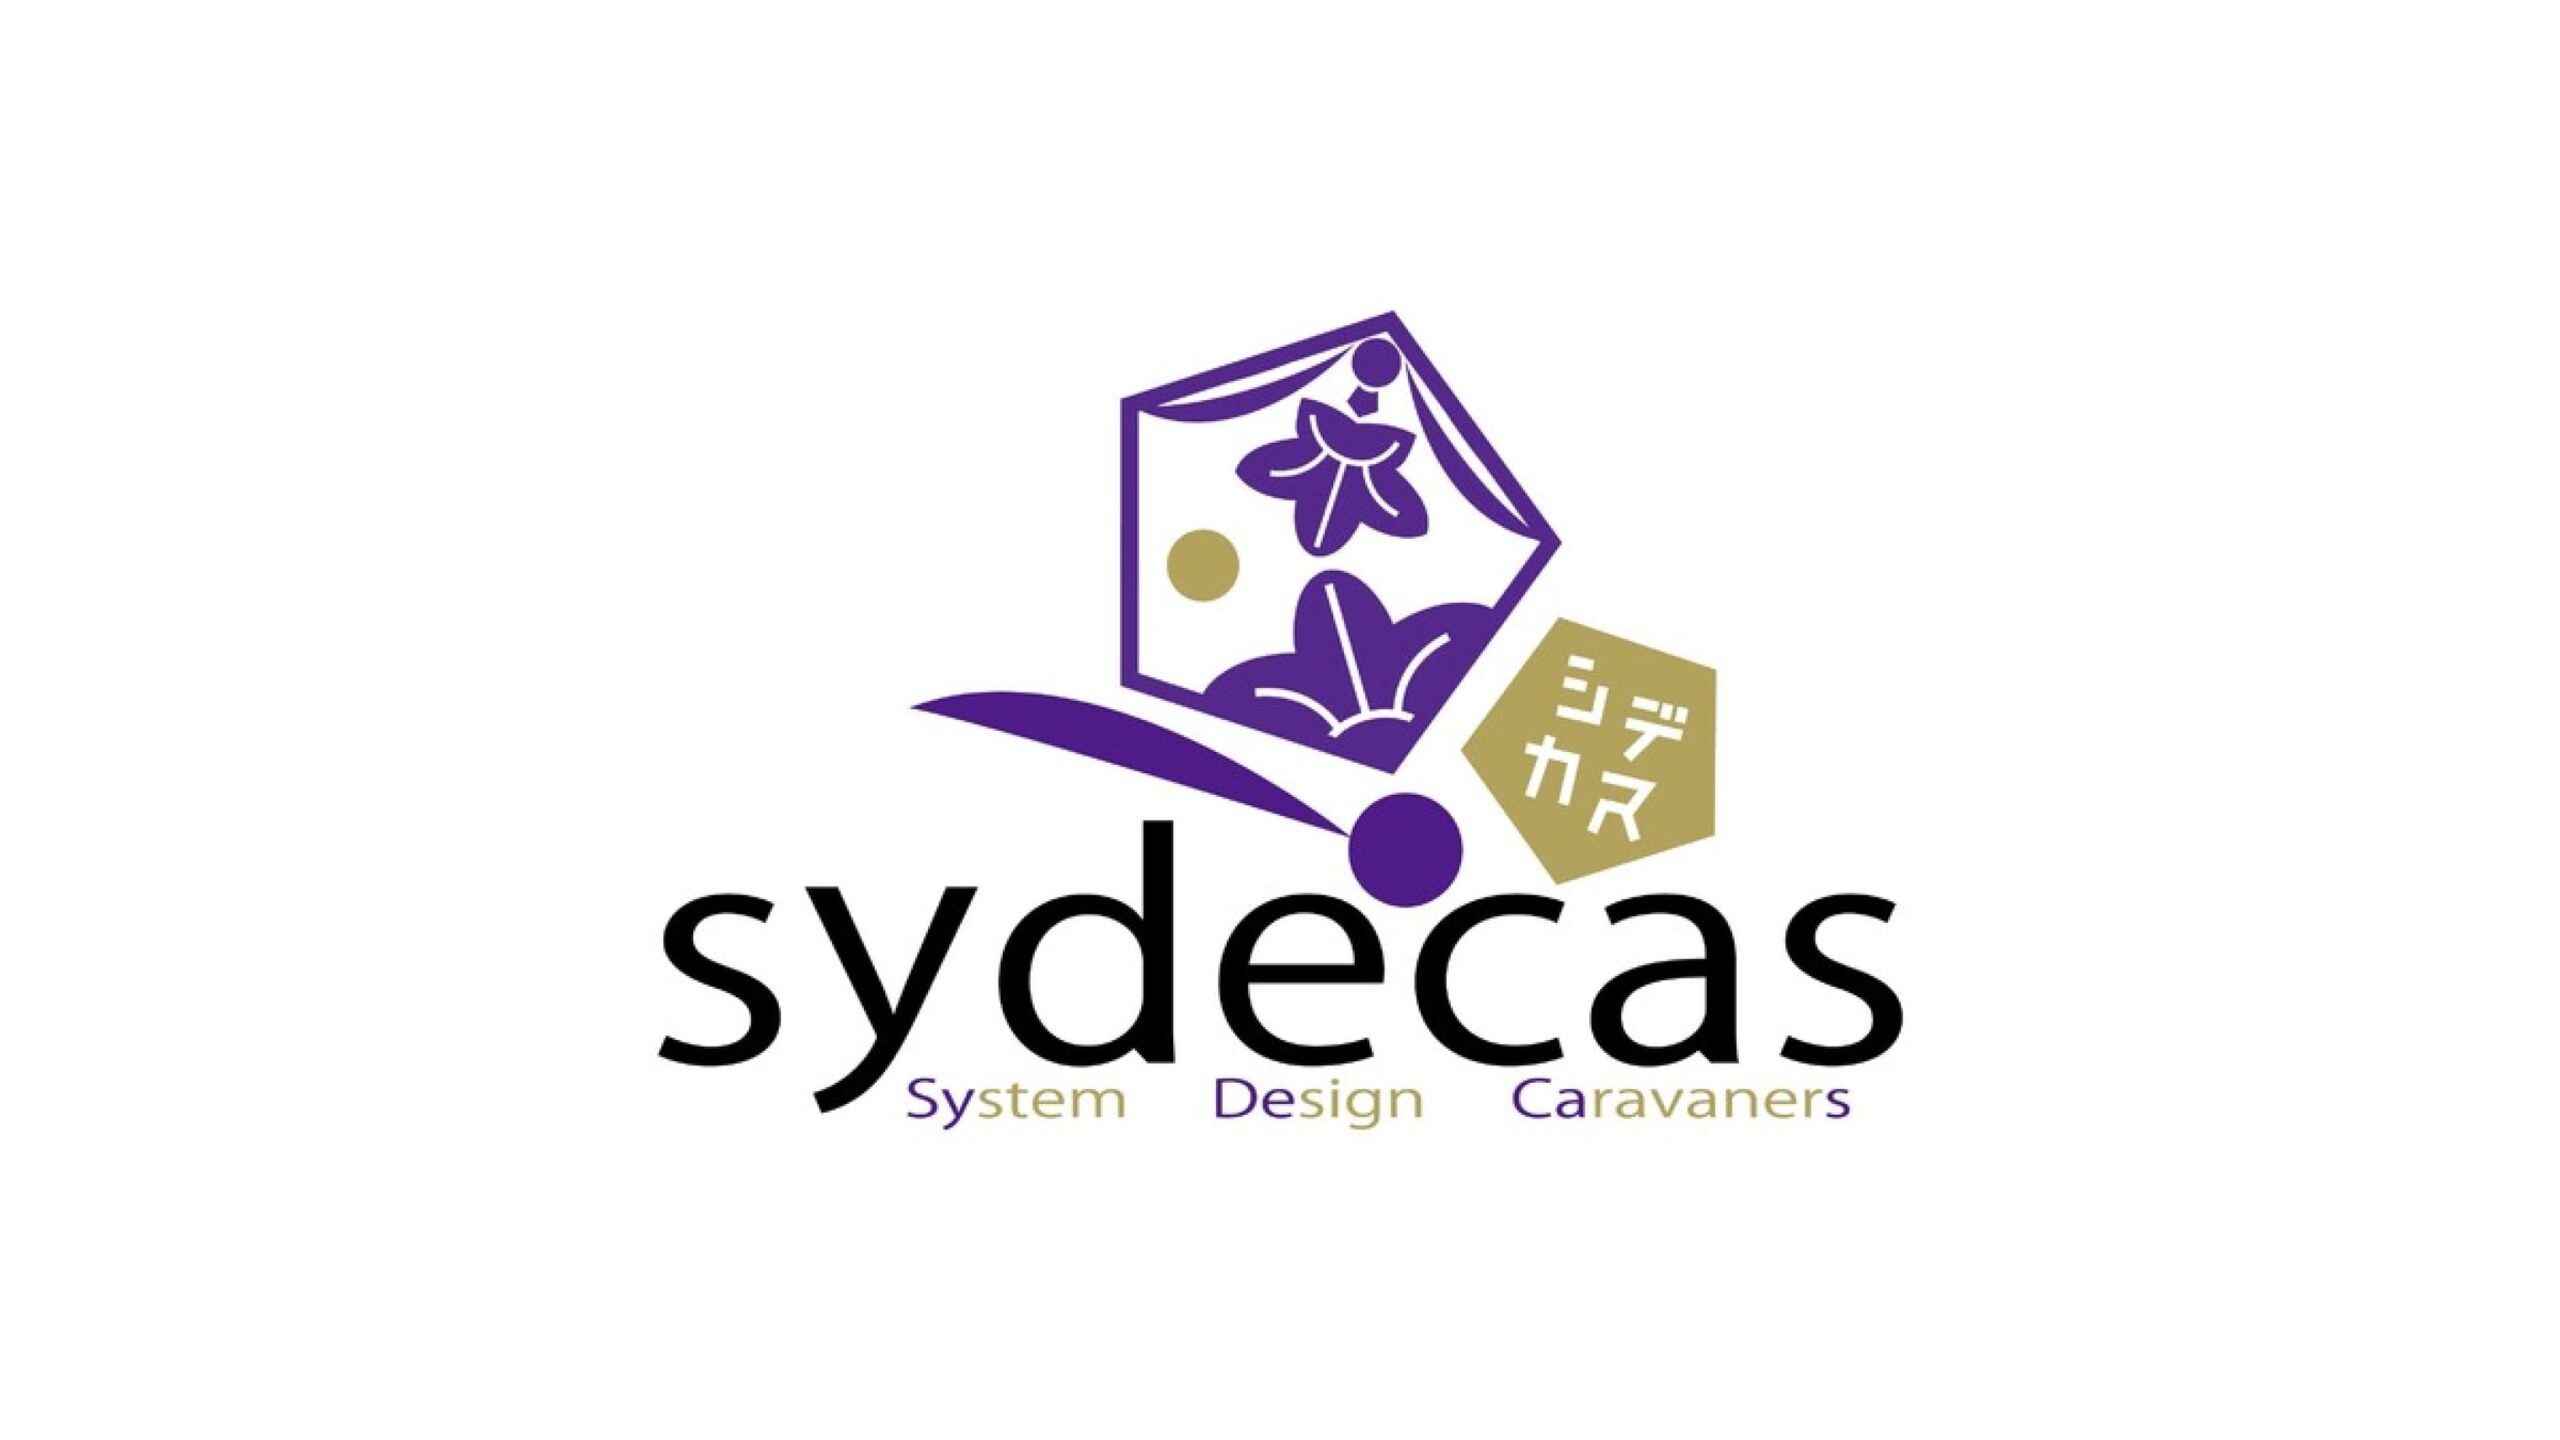 マテリアルフードテック「NinjaFoods」する株式会社Sydecasが資本性ローンによる資金調達を実施